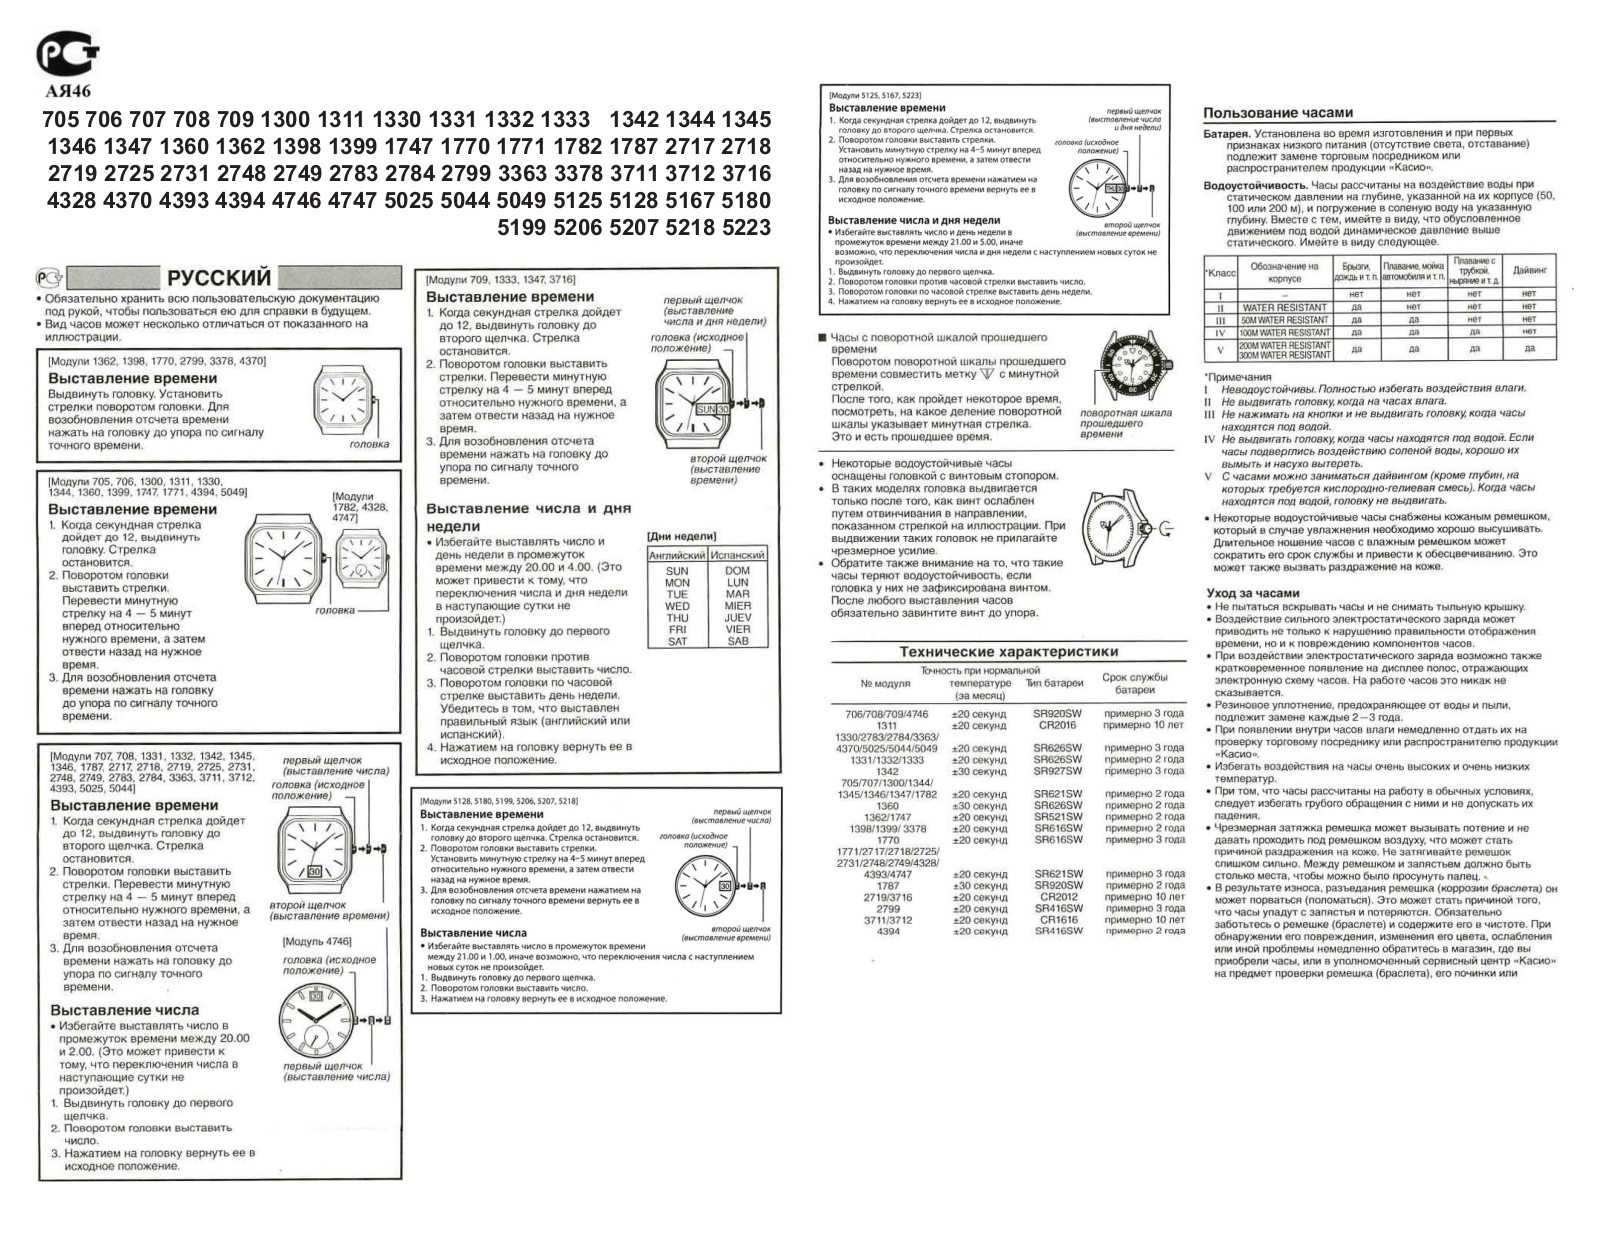 Casio 1333 User Manual